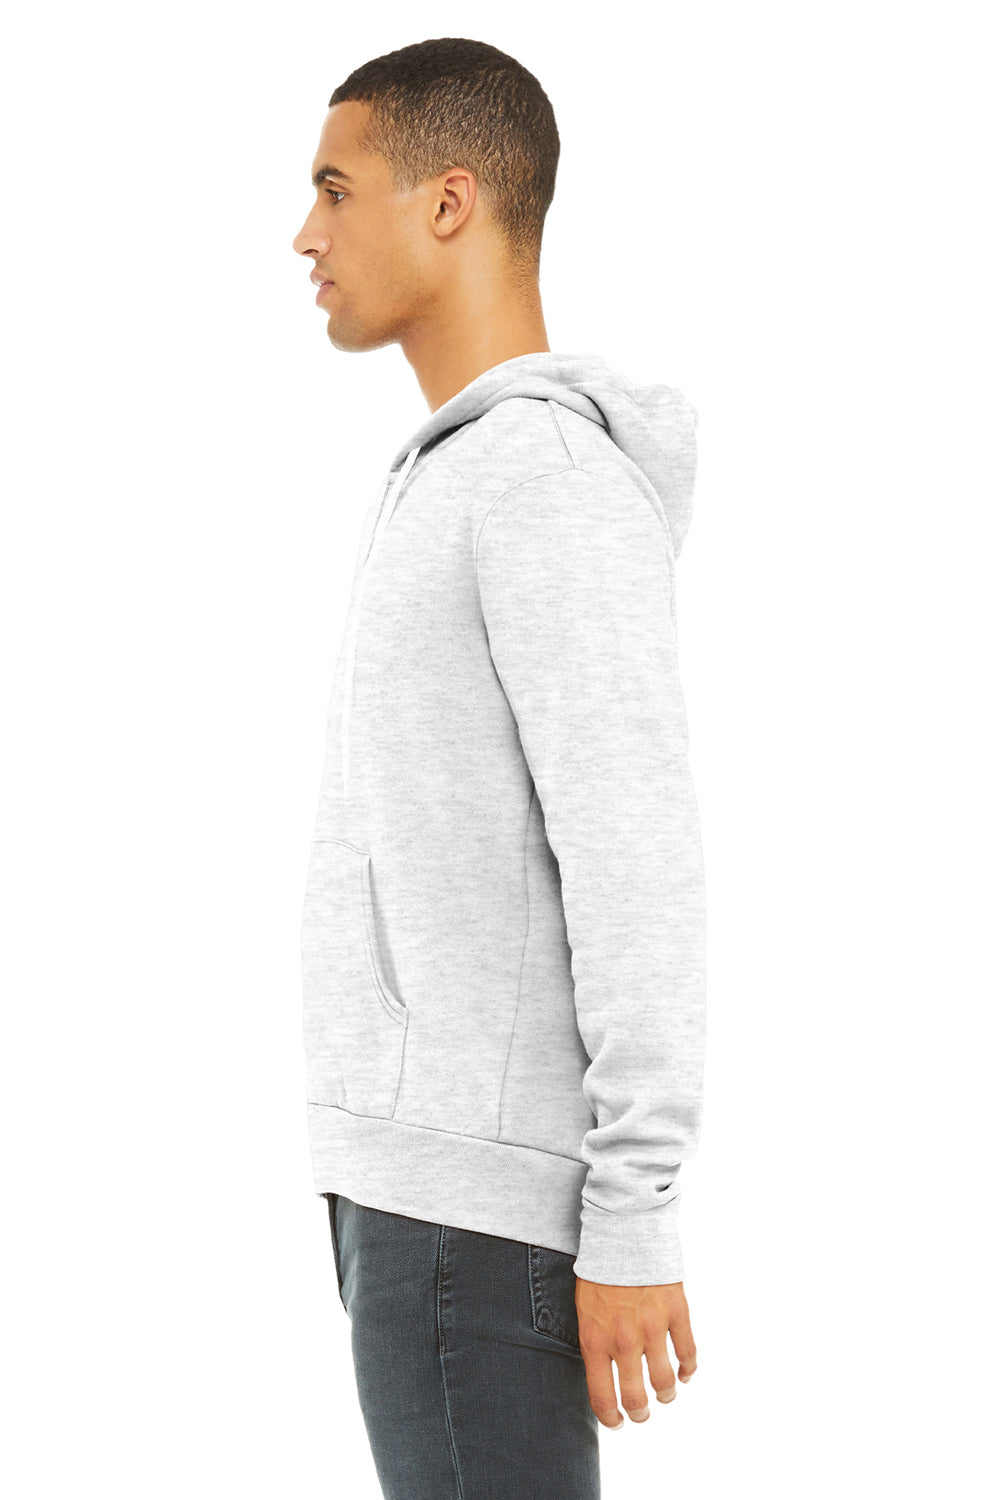 Bella + Canvas BC3739/3739 Mens Fleece Full Zip Hooded Sweatshirt Hoodie Ash Grey Model Side